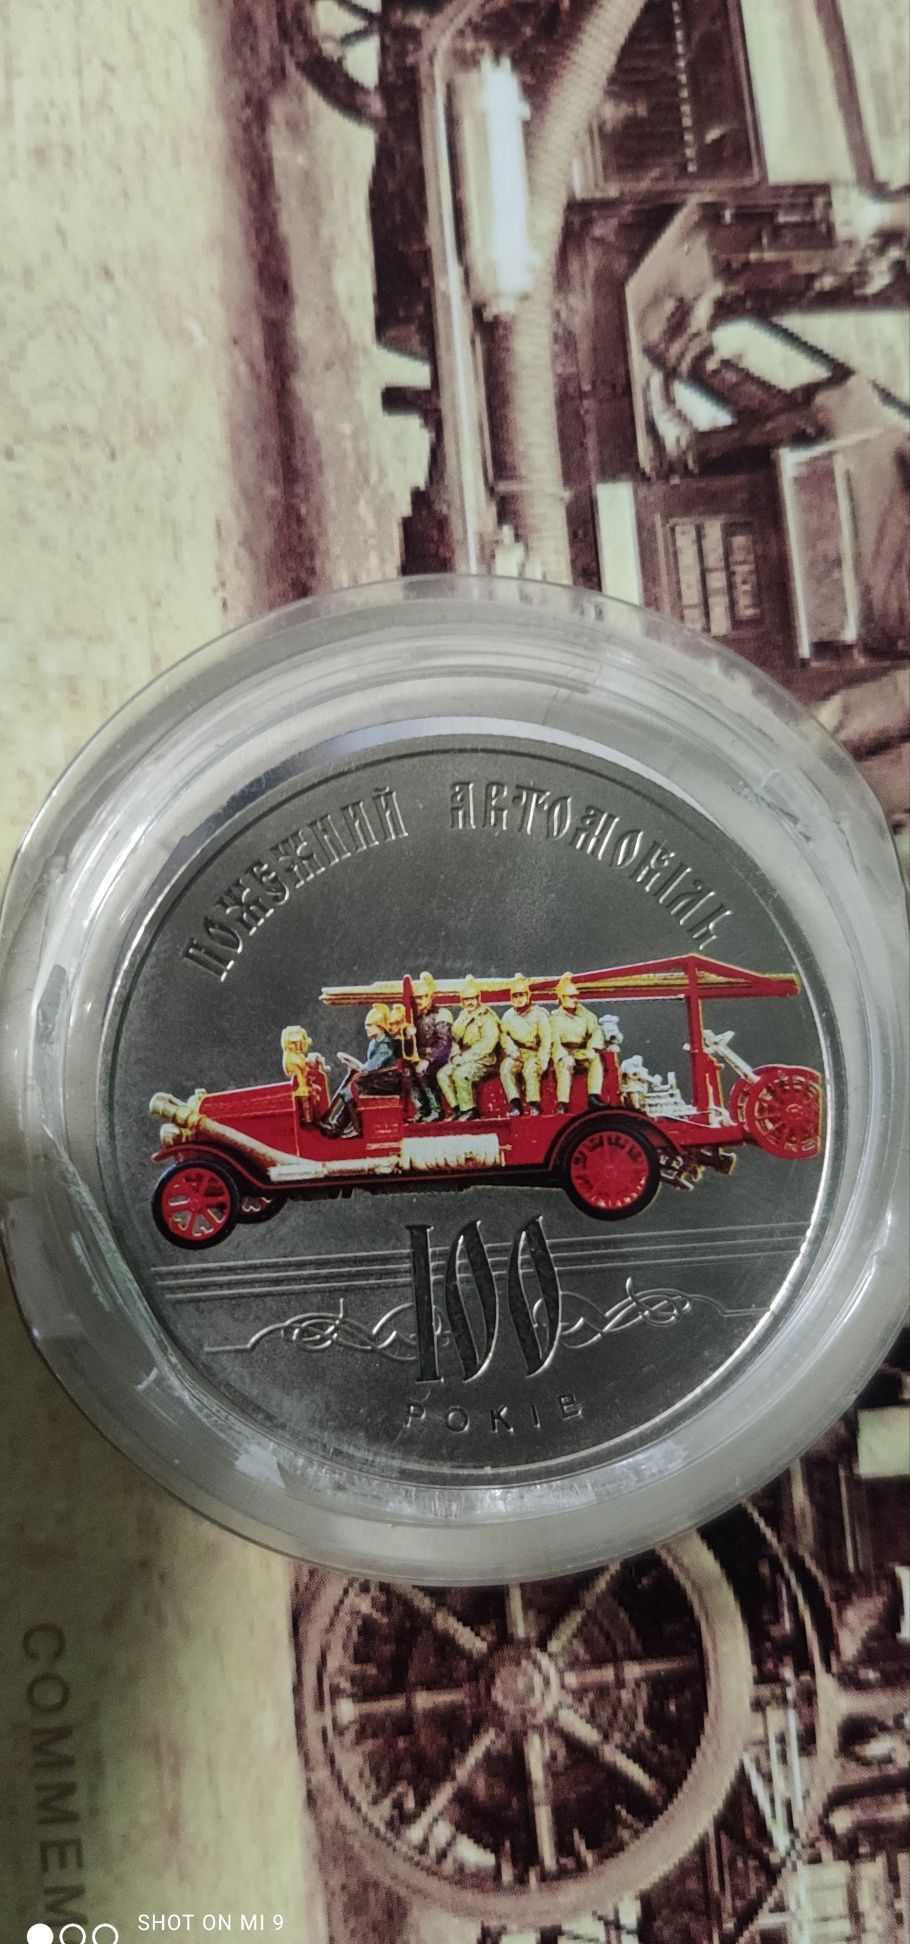 Монета України 100 років пожежної машини